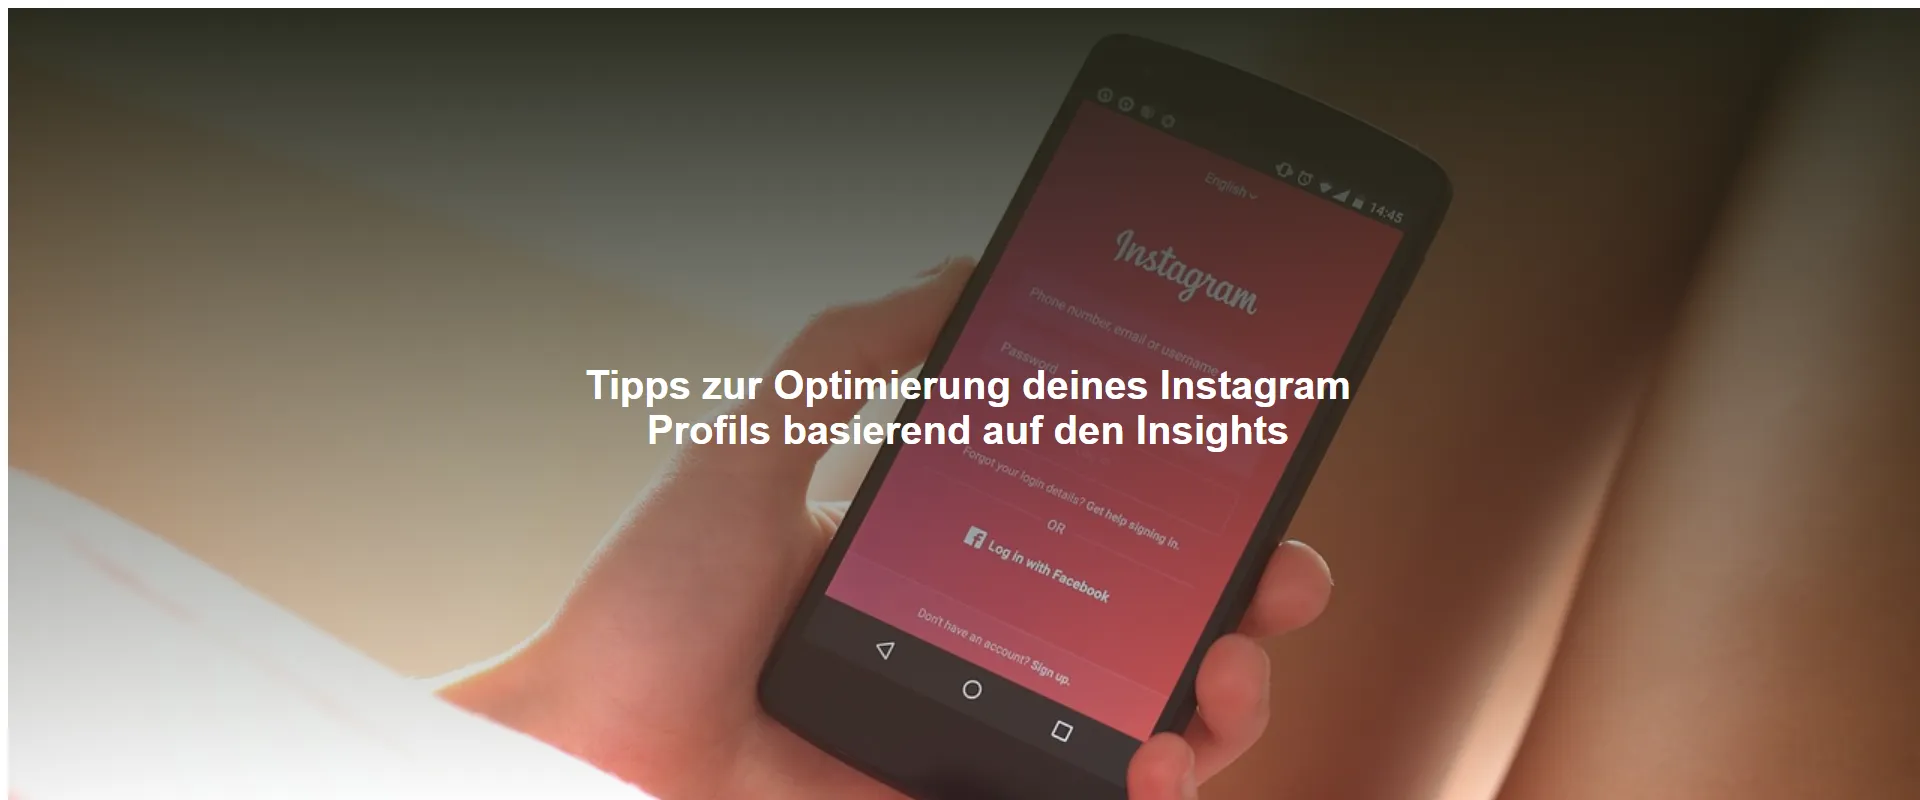 Tipps zur Optimierung deines Instagram Profils basierend auf den Insights